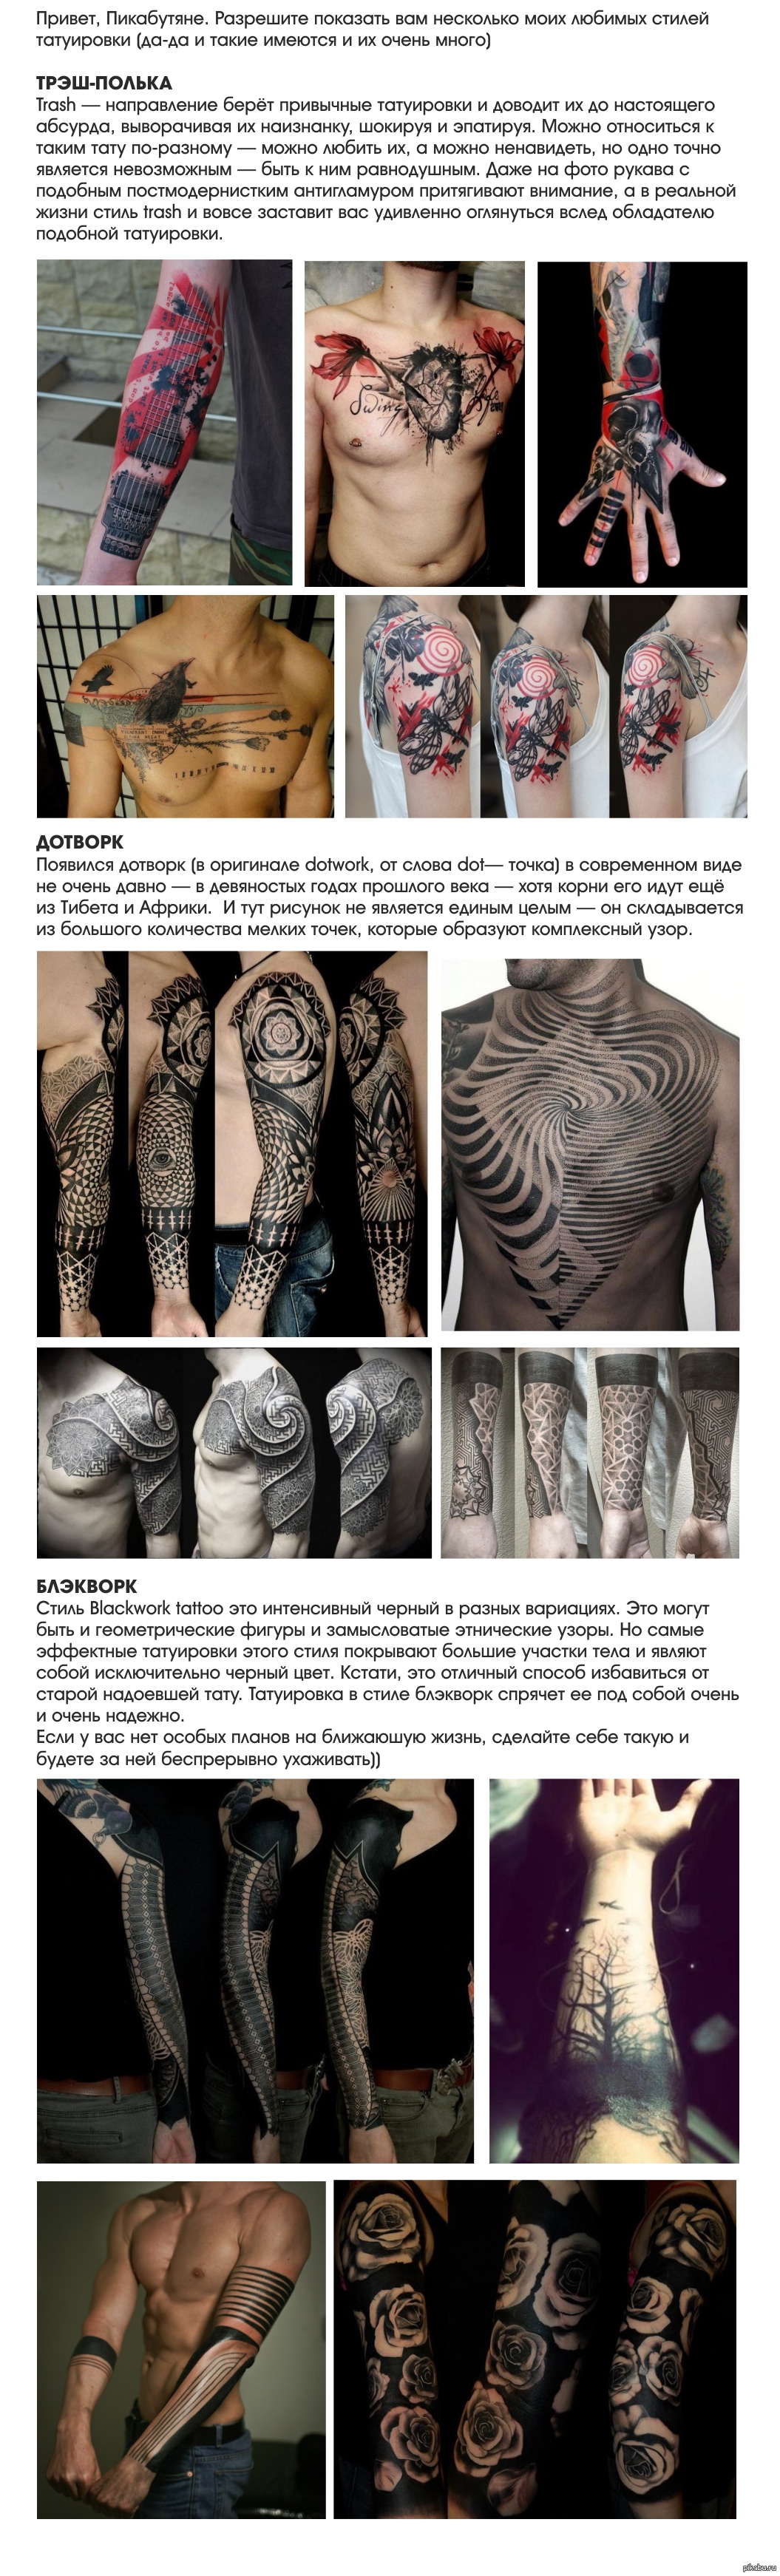 стили татуировок список с описанием и фото